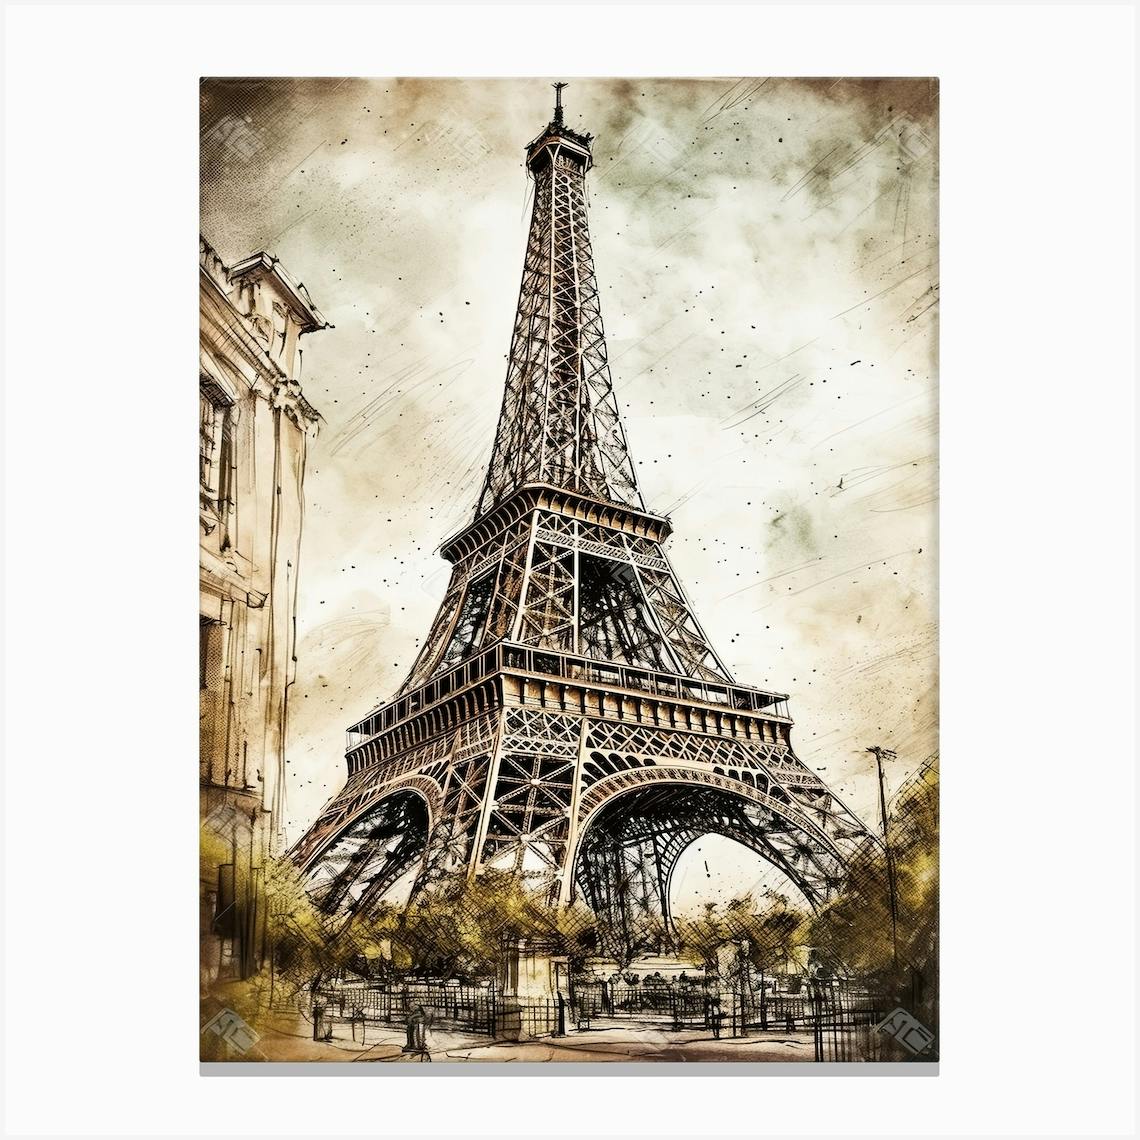 14,890 Paris City Sketch Images, Stock Photos & Vectors | Shutterstock